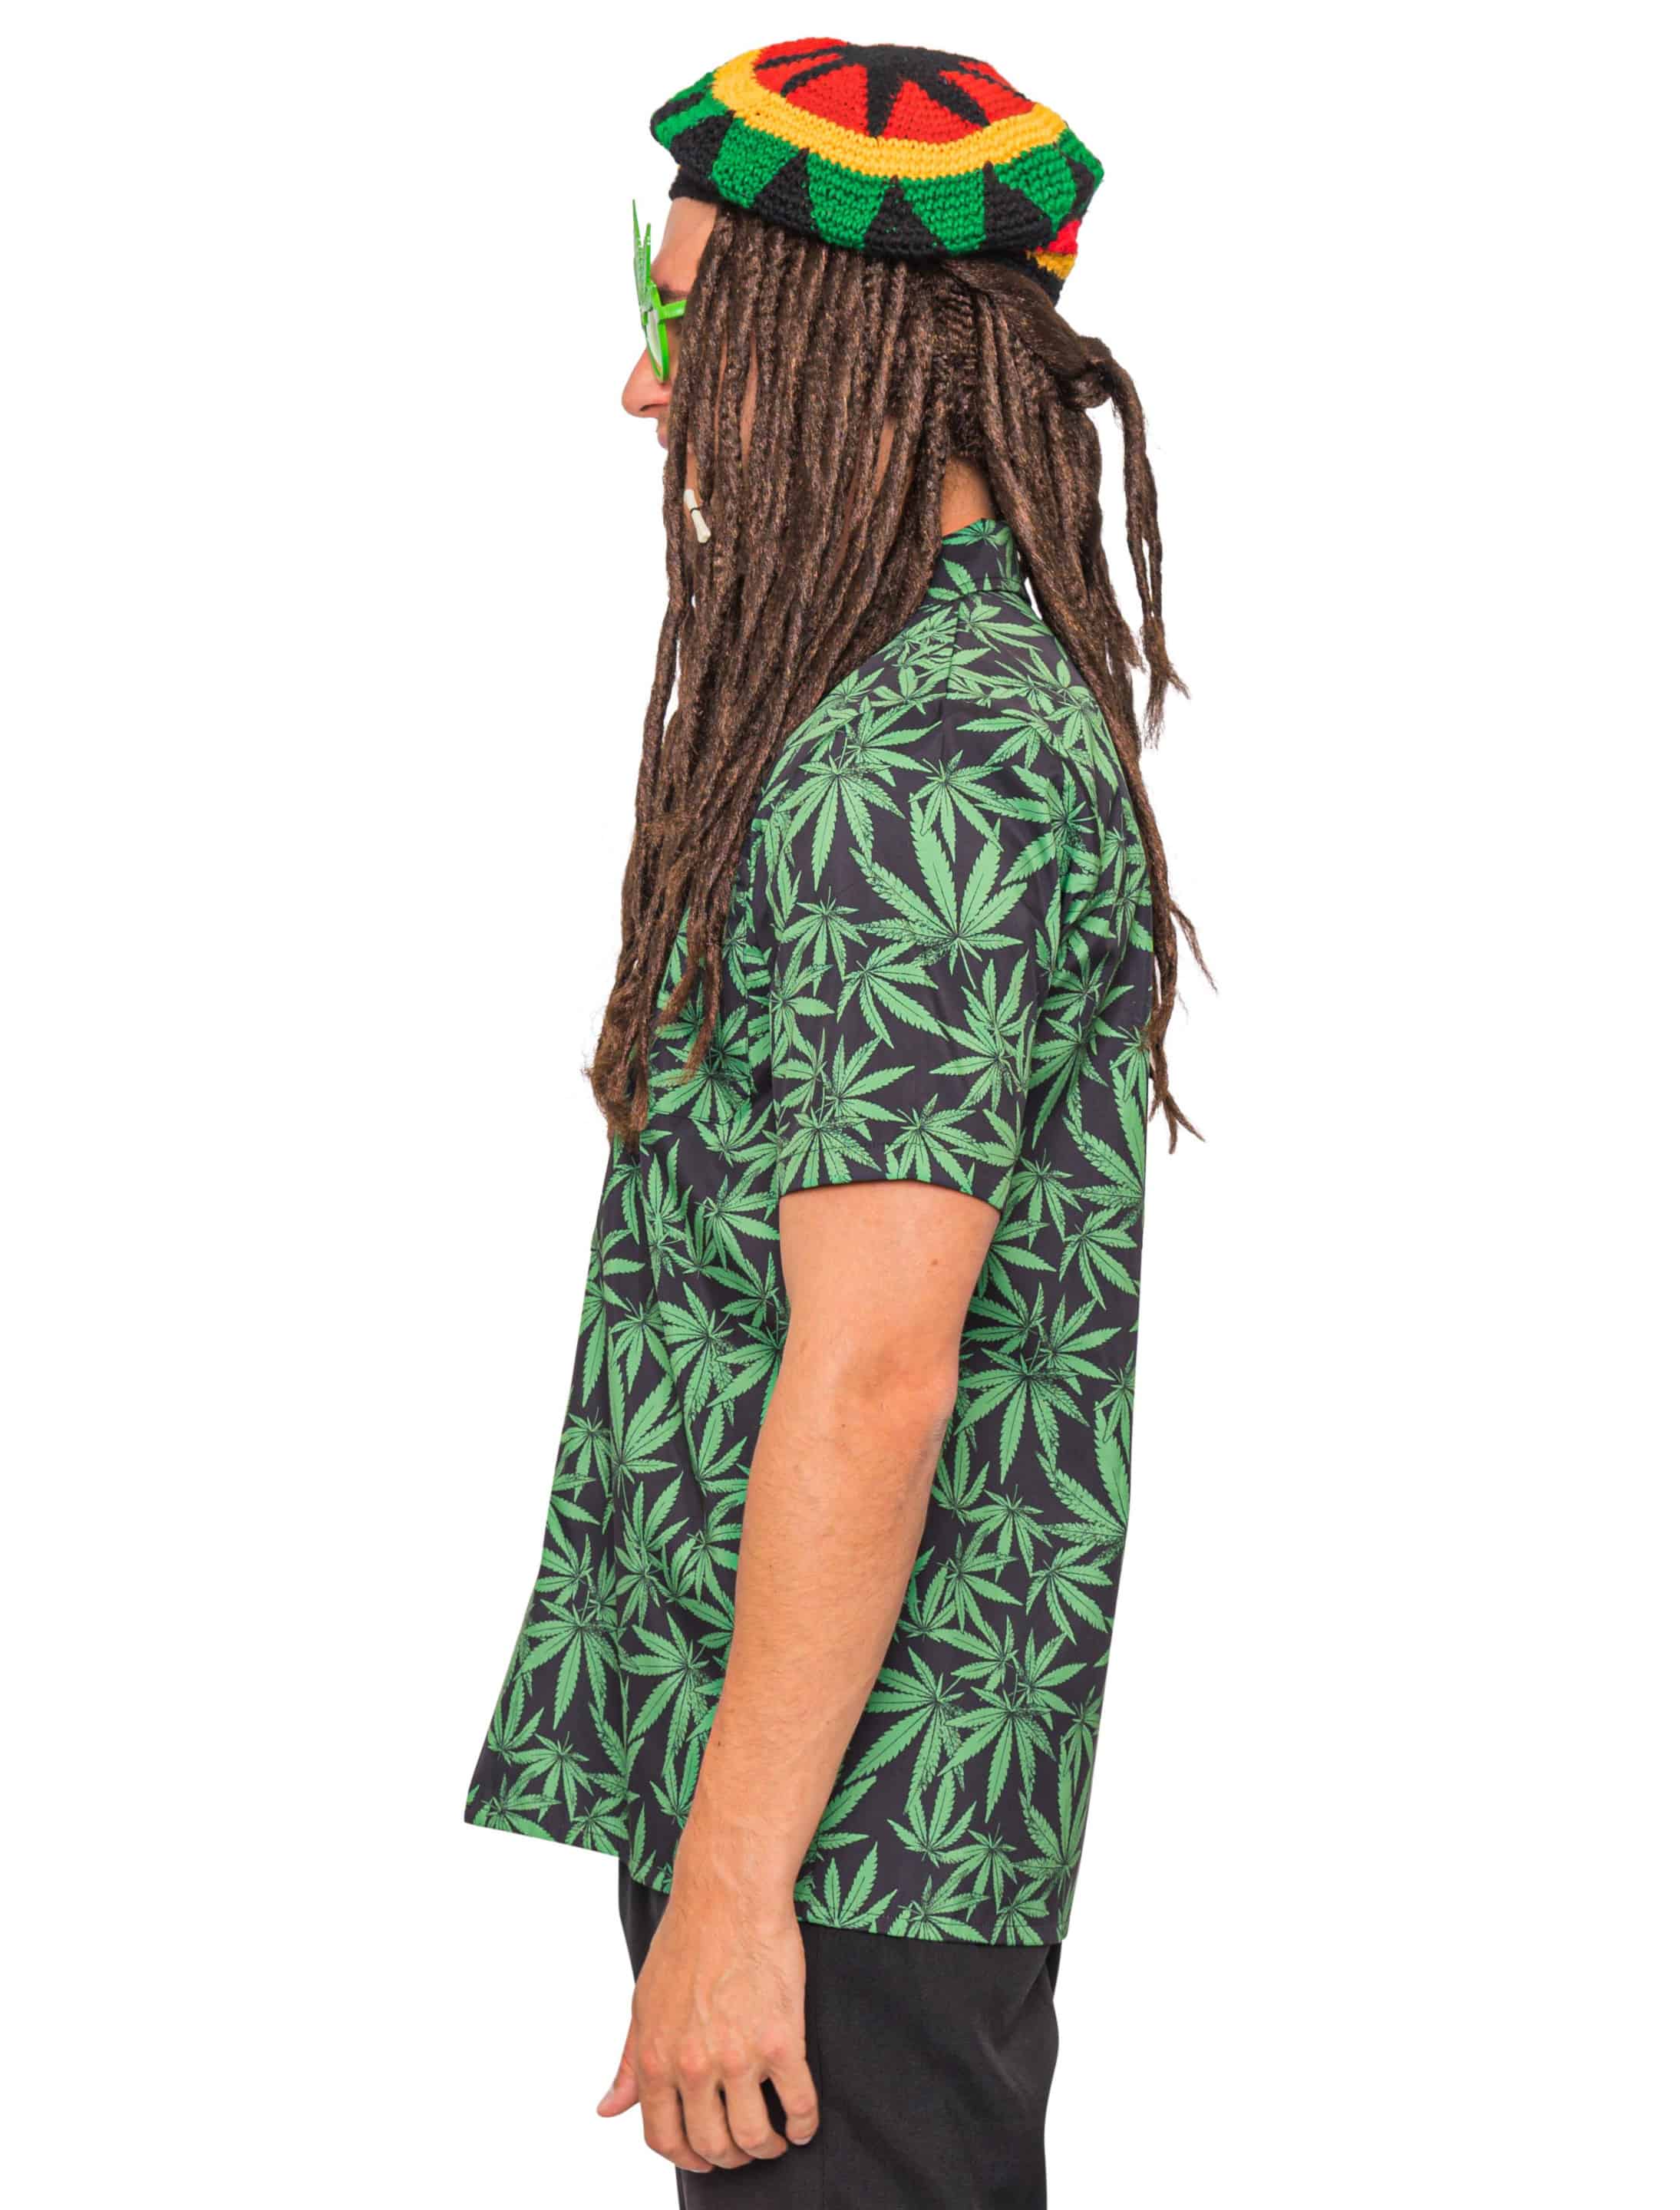 Hemd Cannabis Herren grün L